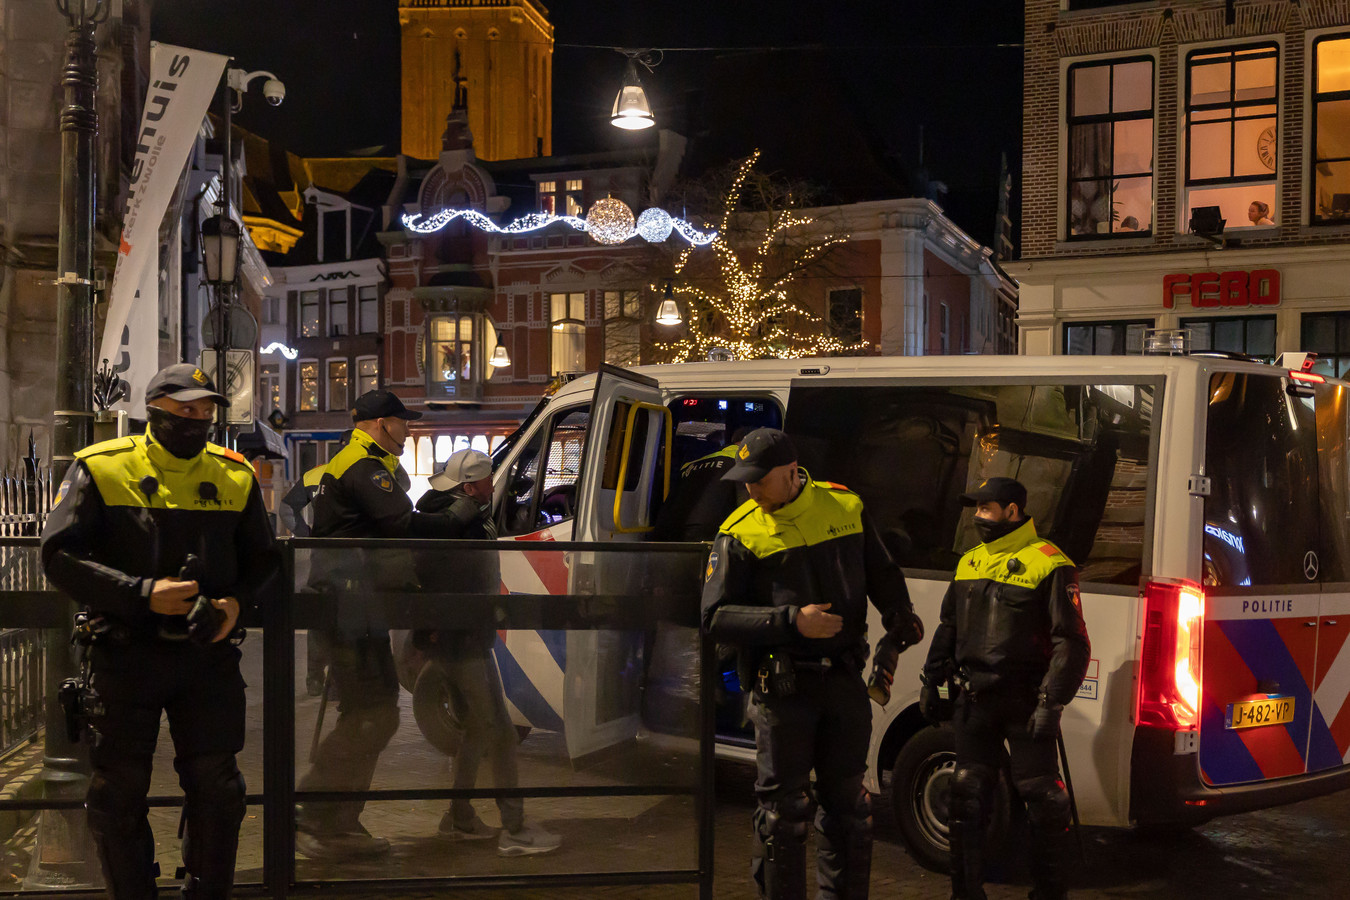 De politie in actie in Zwolle gisteravond.